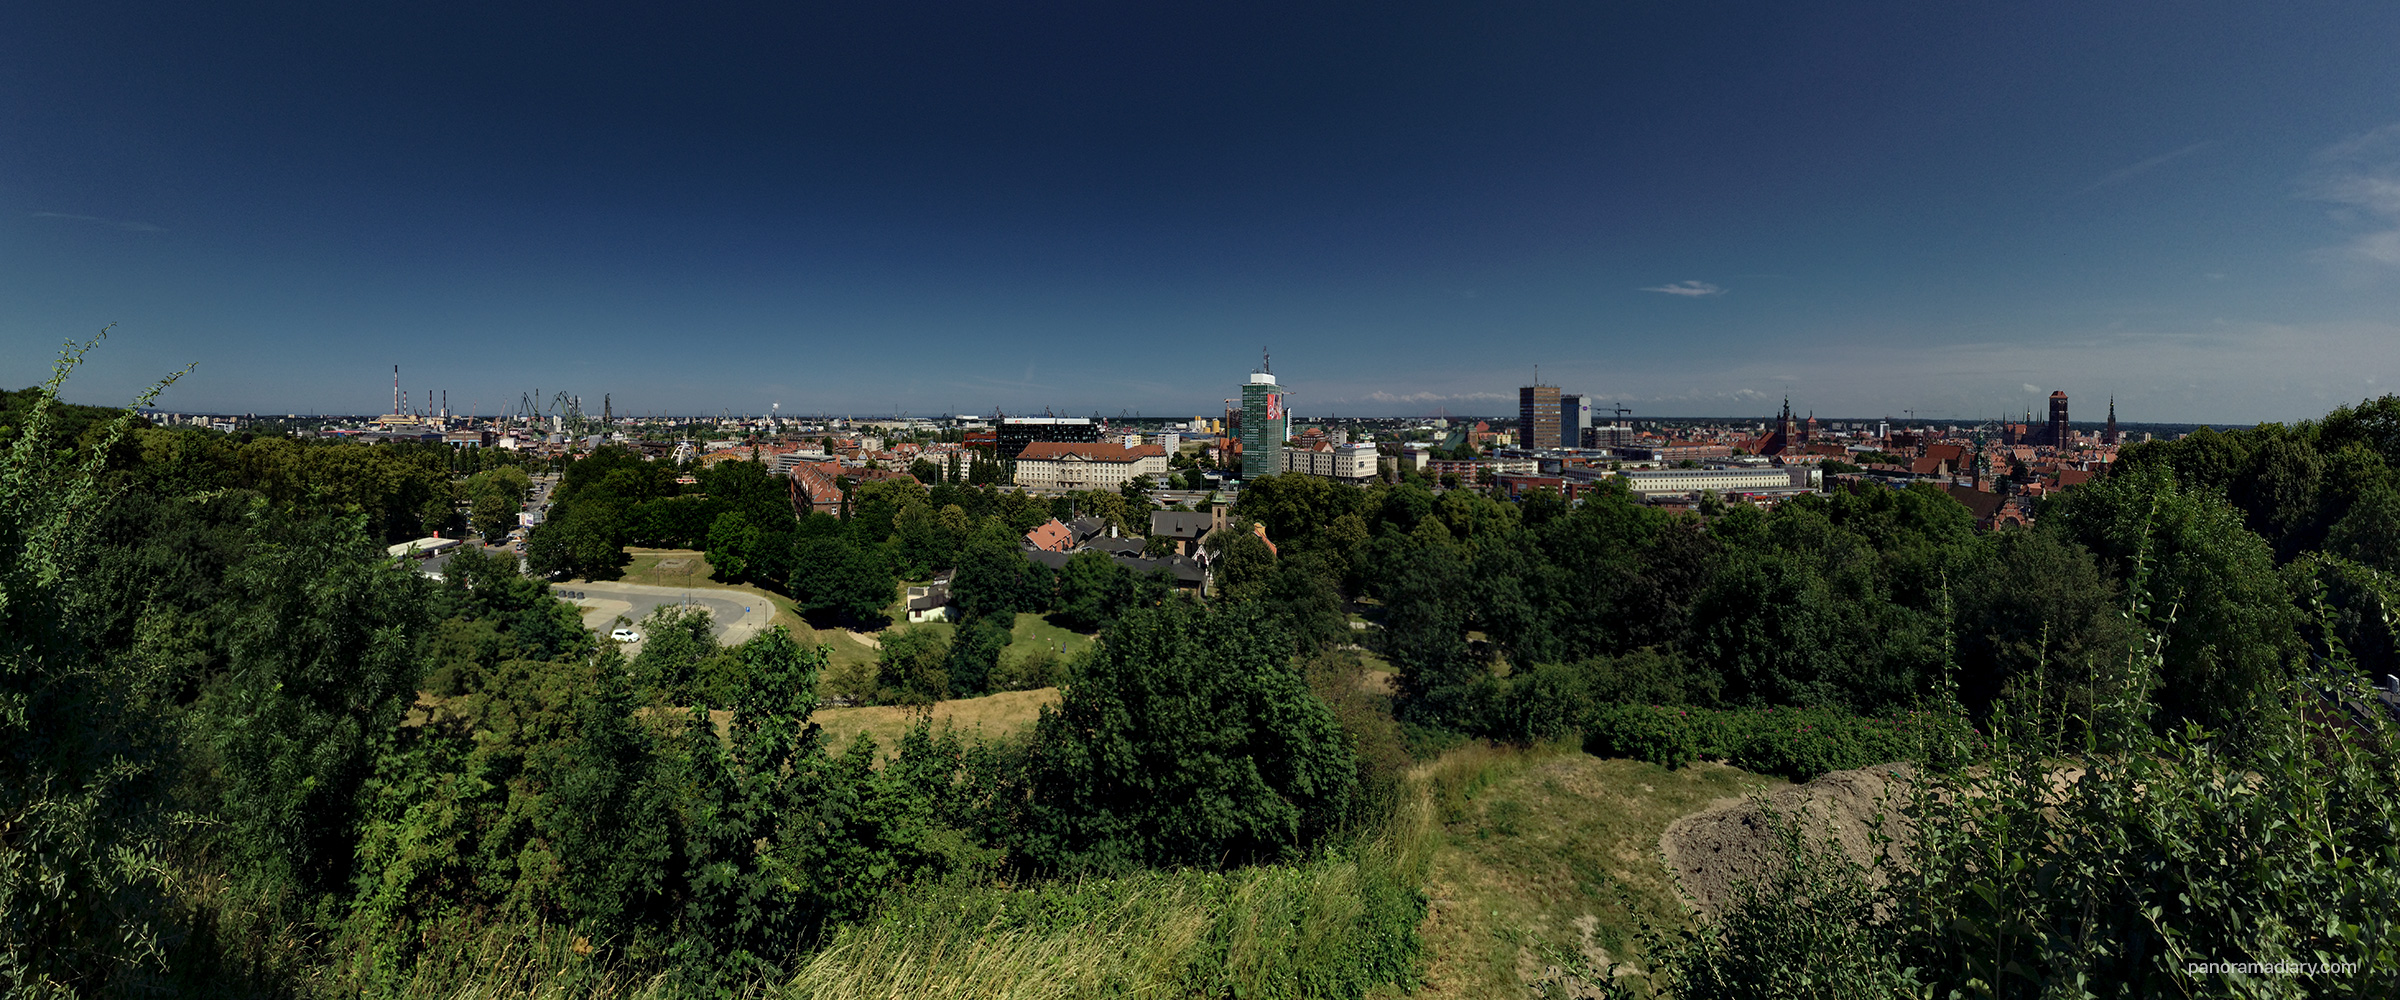 PANORAMA DIARY | Panorama of the Gdańsk city